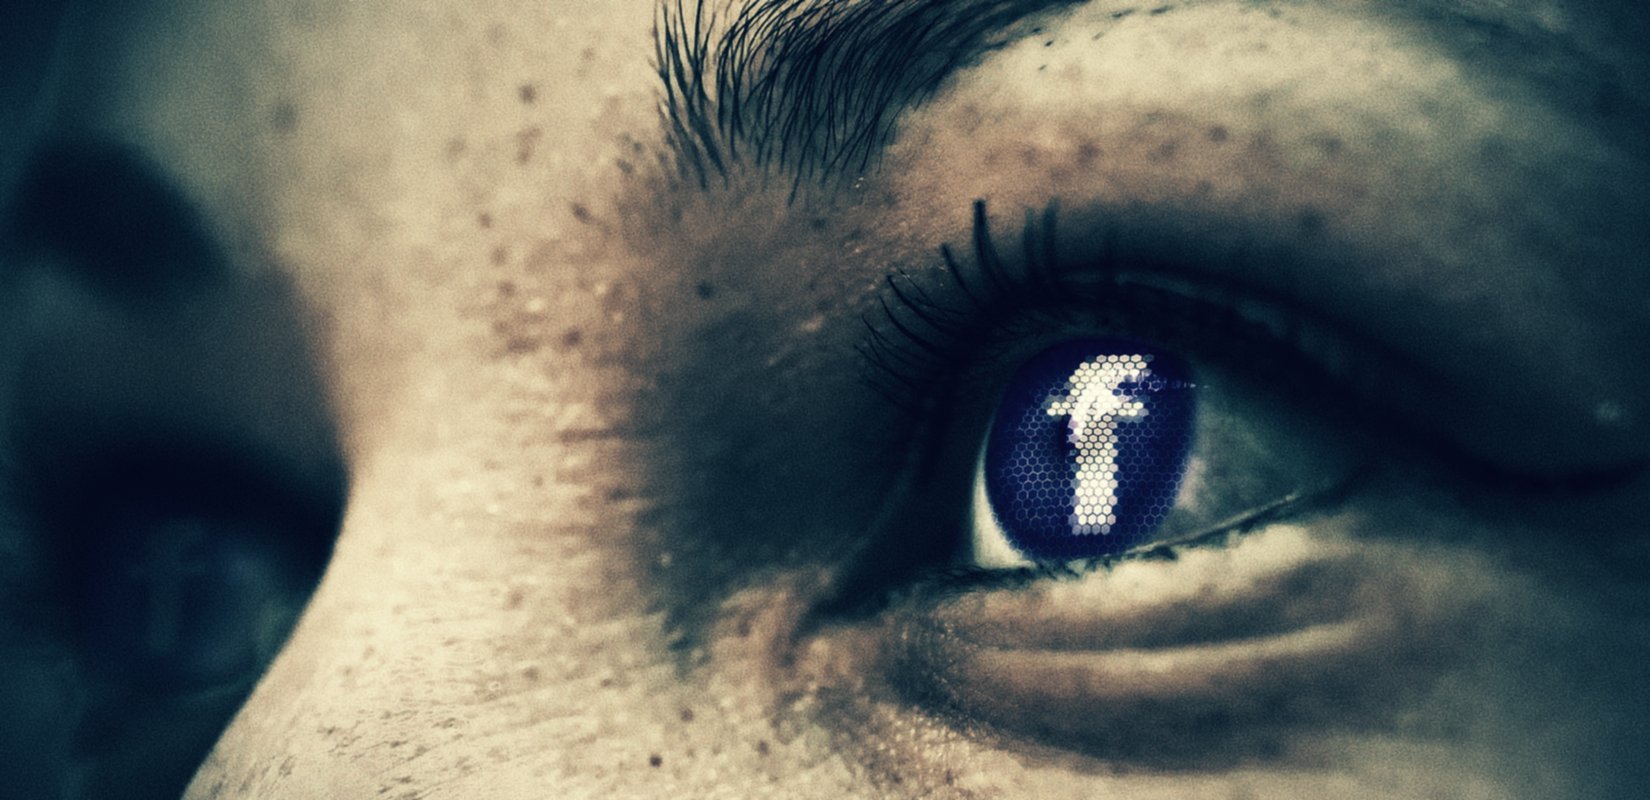 Facebook sắp loại bỏ tính năng nhận dạng khuôn mặt